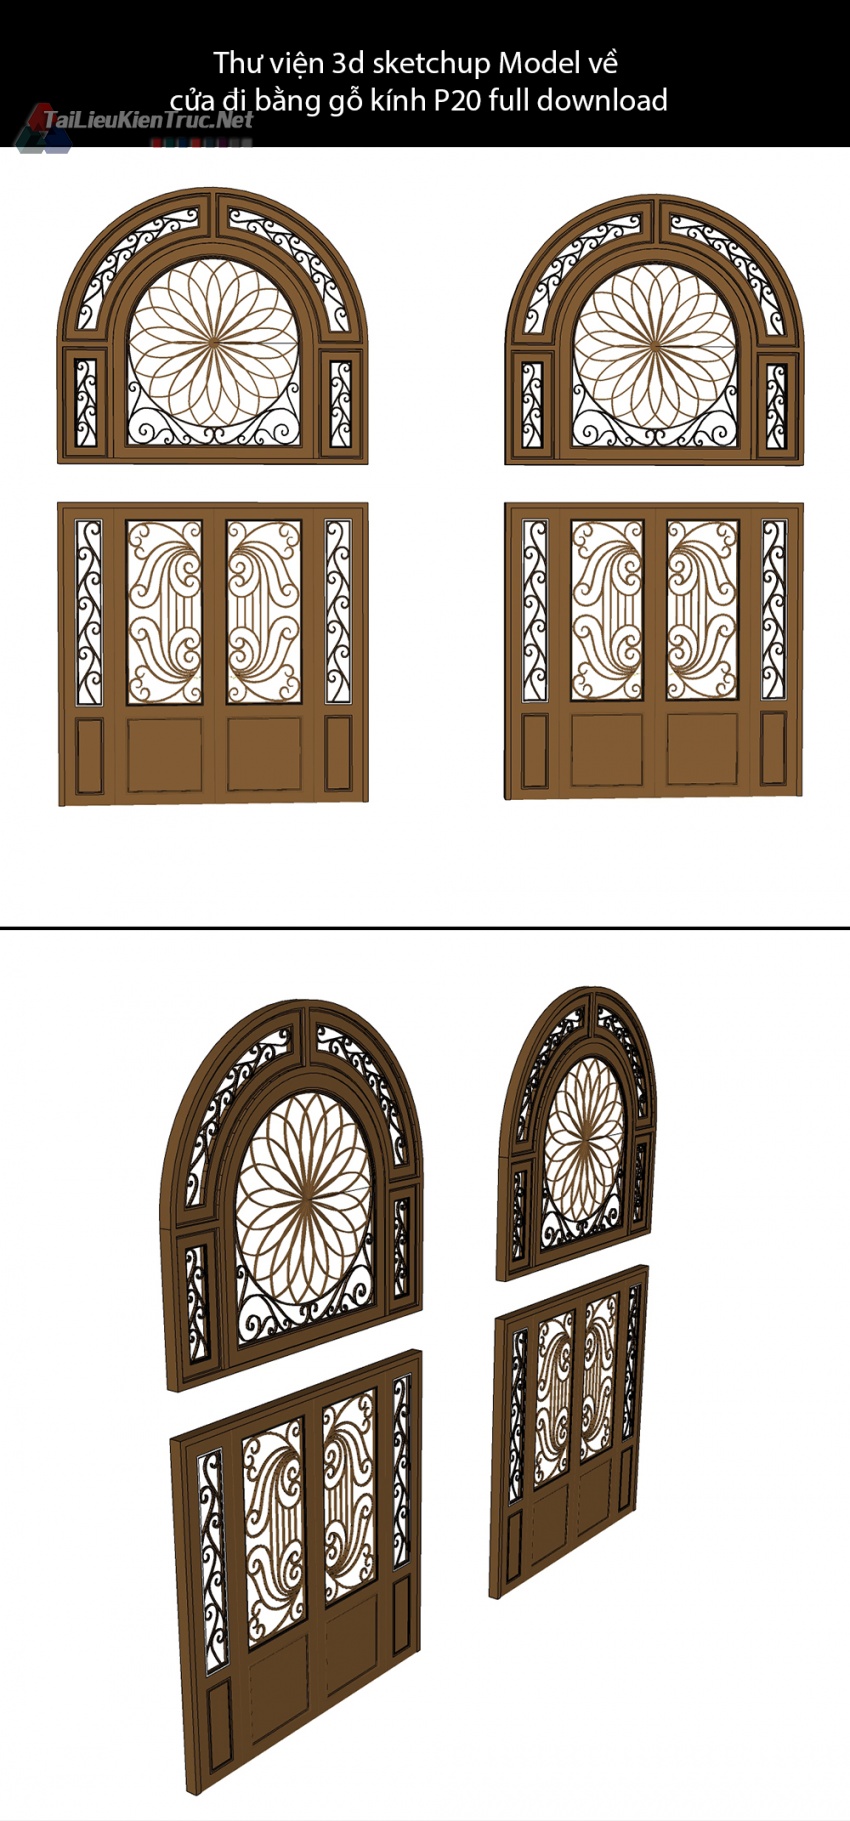 Thư viện 3d sketchup Model về cửa đi bằng gỗ kính P20 full download